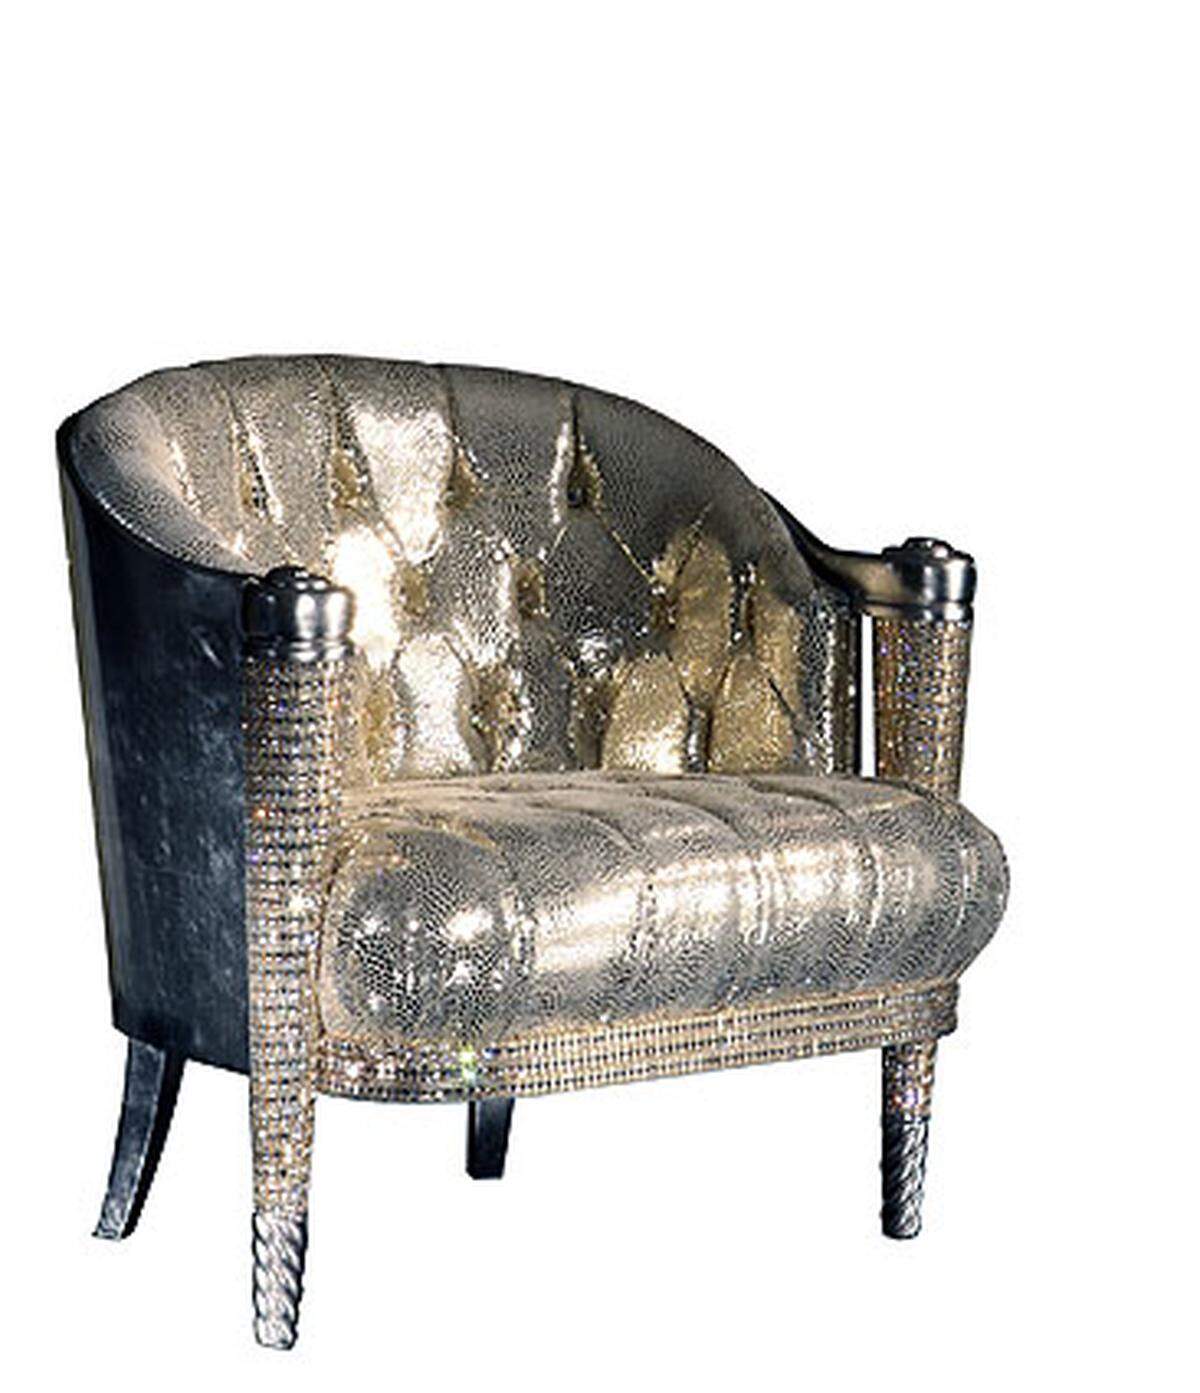 Die Möbel bestellte Jackson bei der italienischen Luxus-Möbelfirma Colombostile speziell für sein Haus in der englischen Grafschaft Kent, wo er während seiner geplanten Londoner Konzerte wohnen wollte.